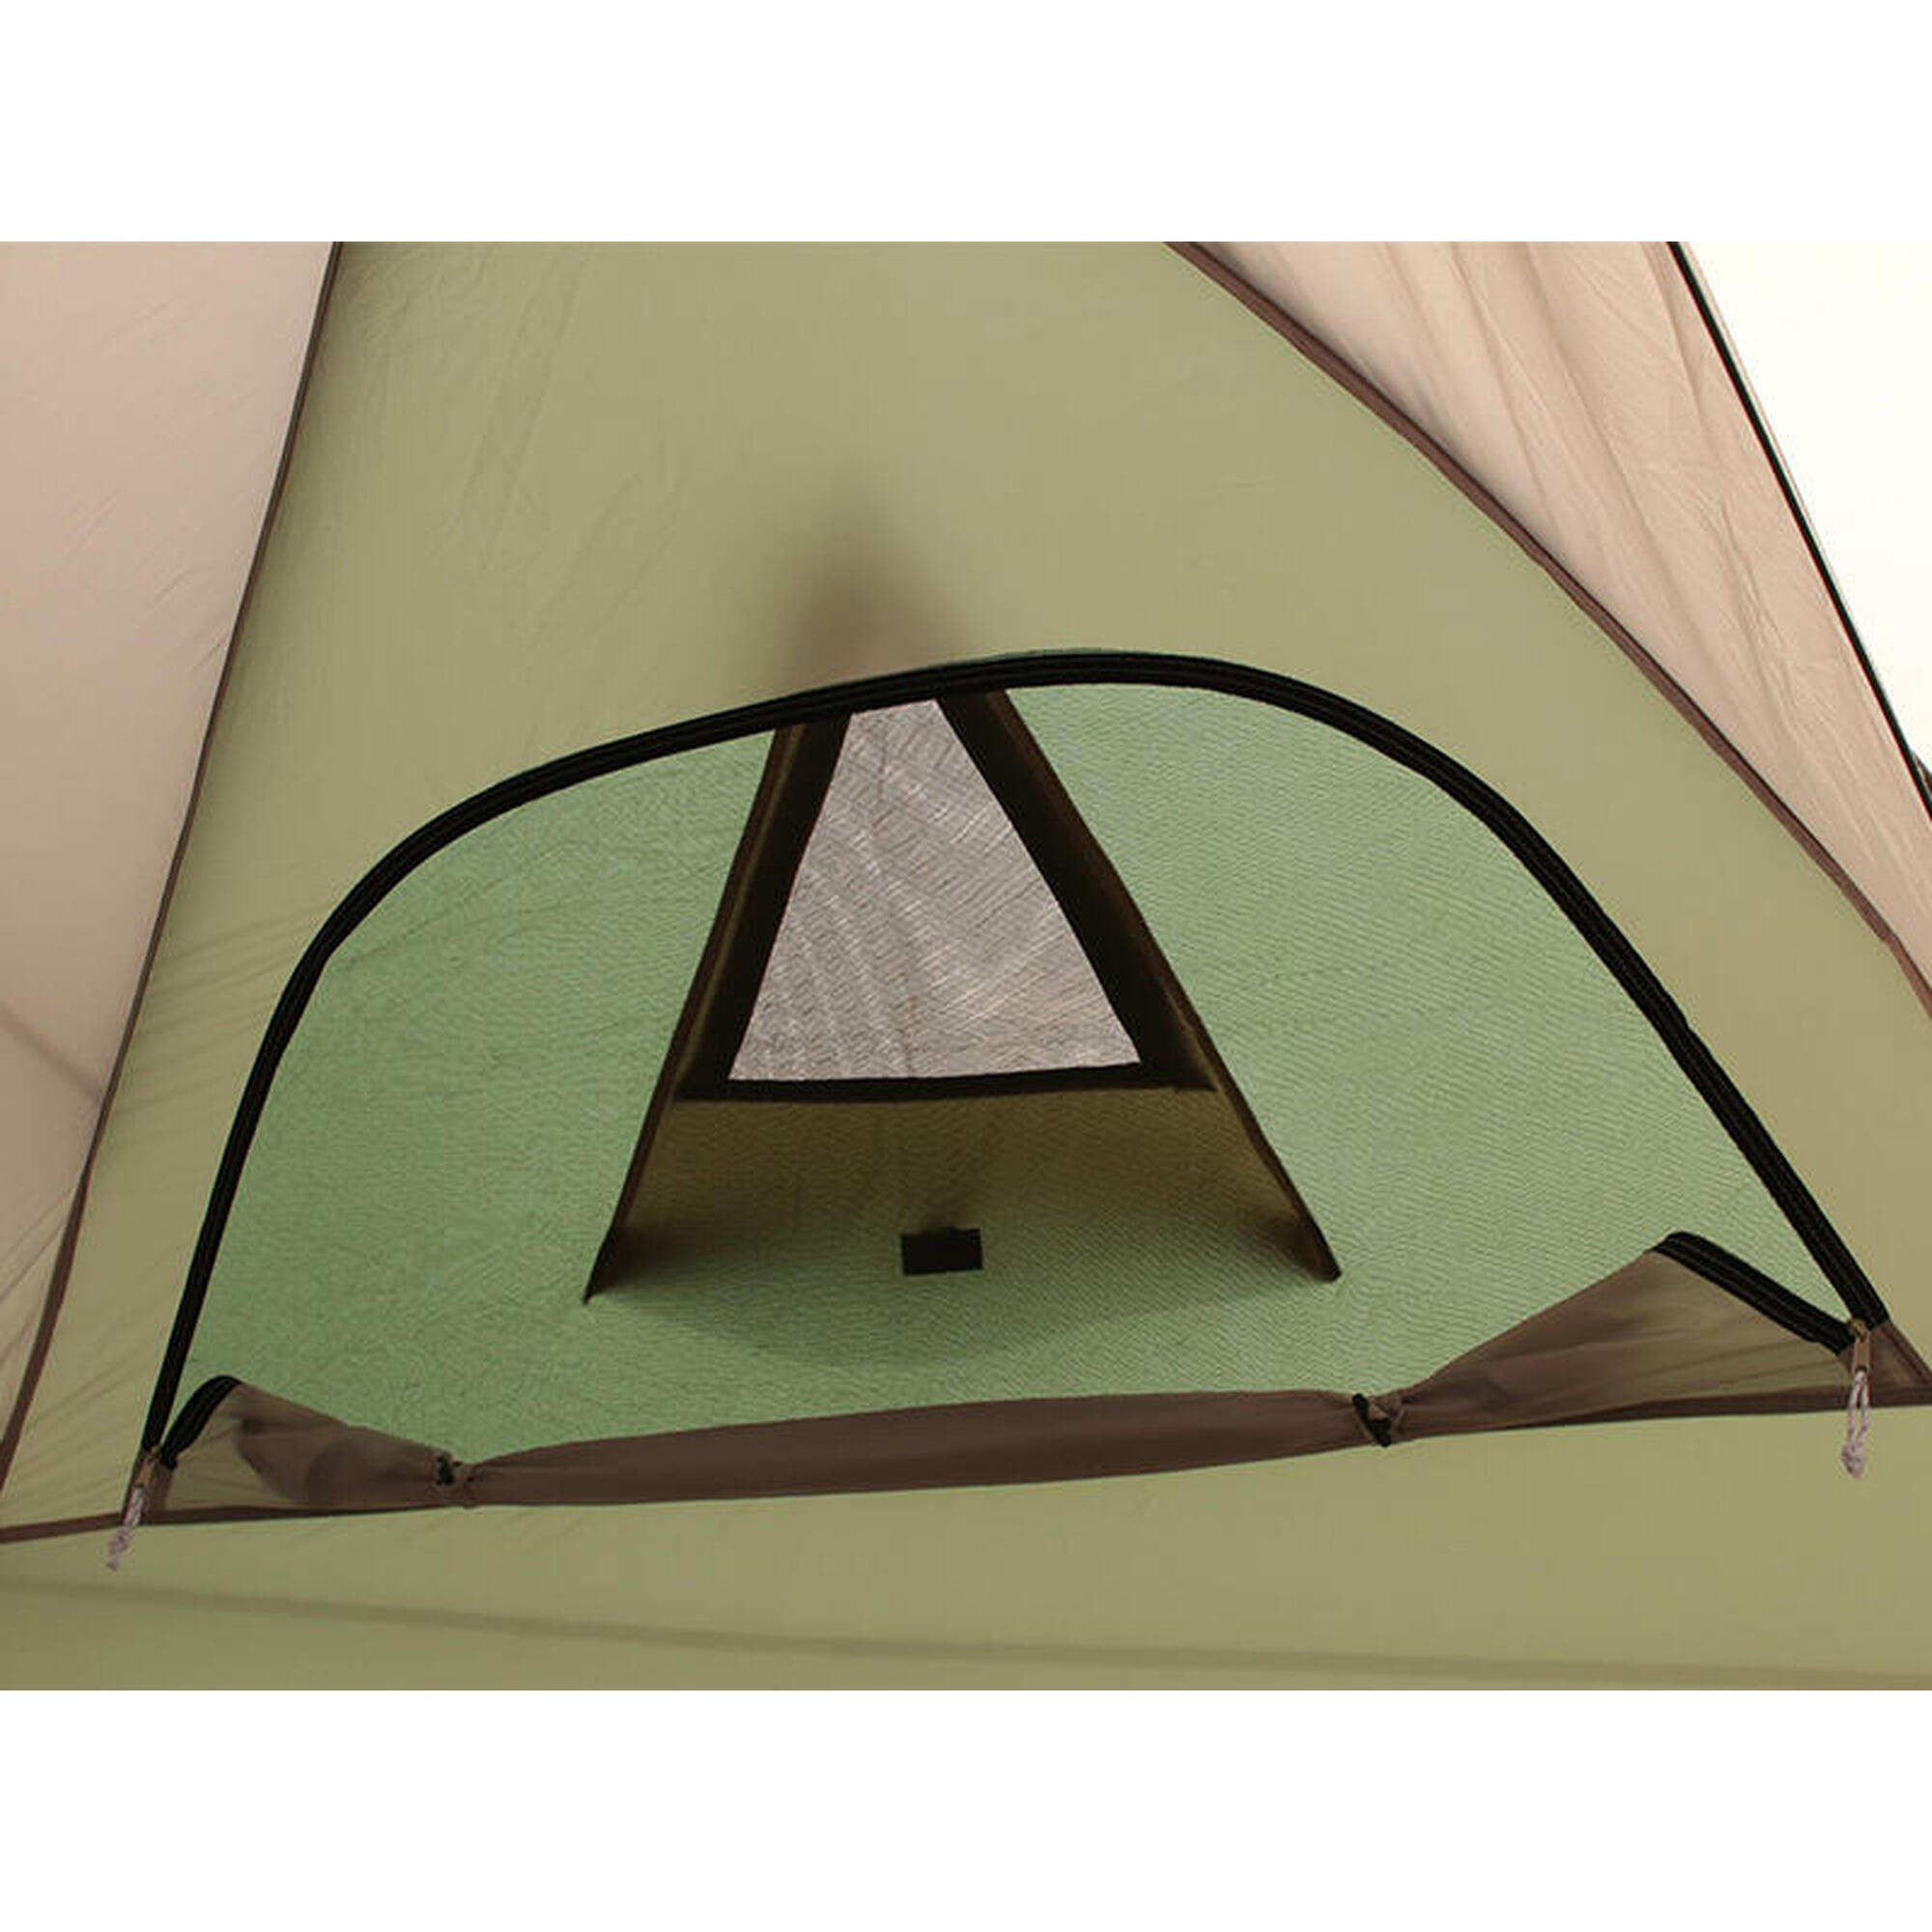 THE TENT (L) T5-624-KH 5 Person Camping Tent - Tan/Khaki